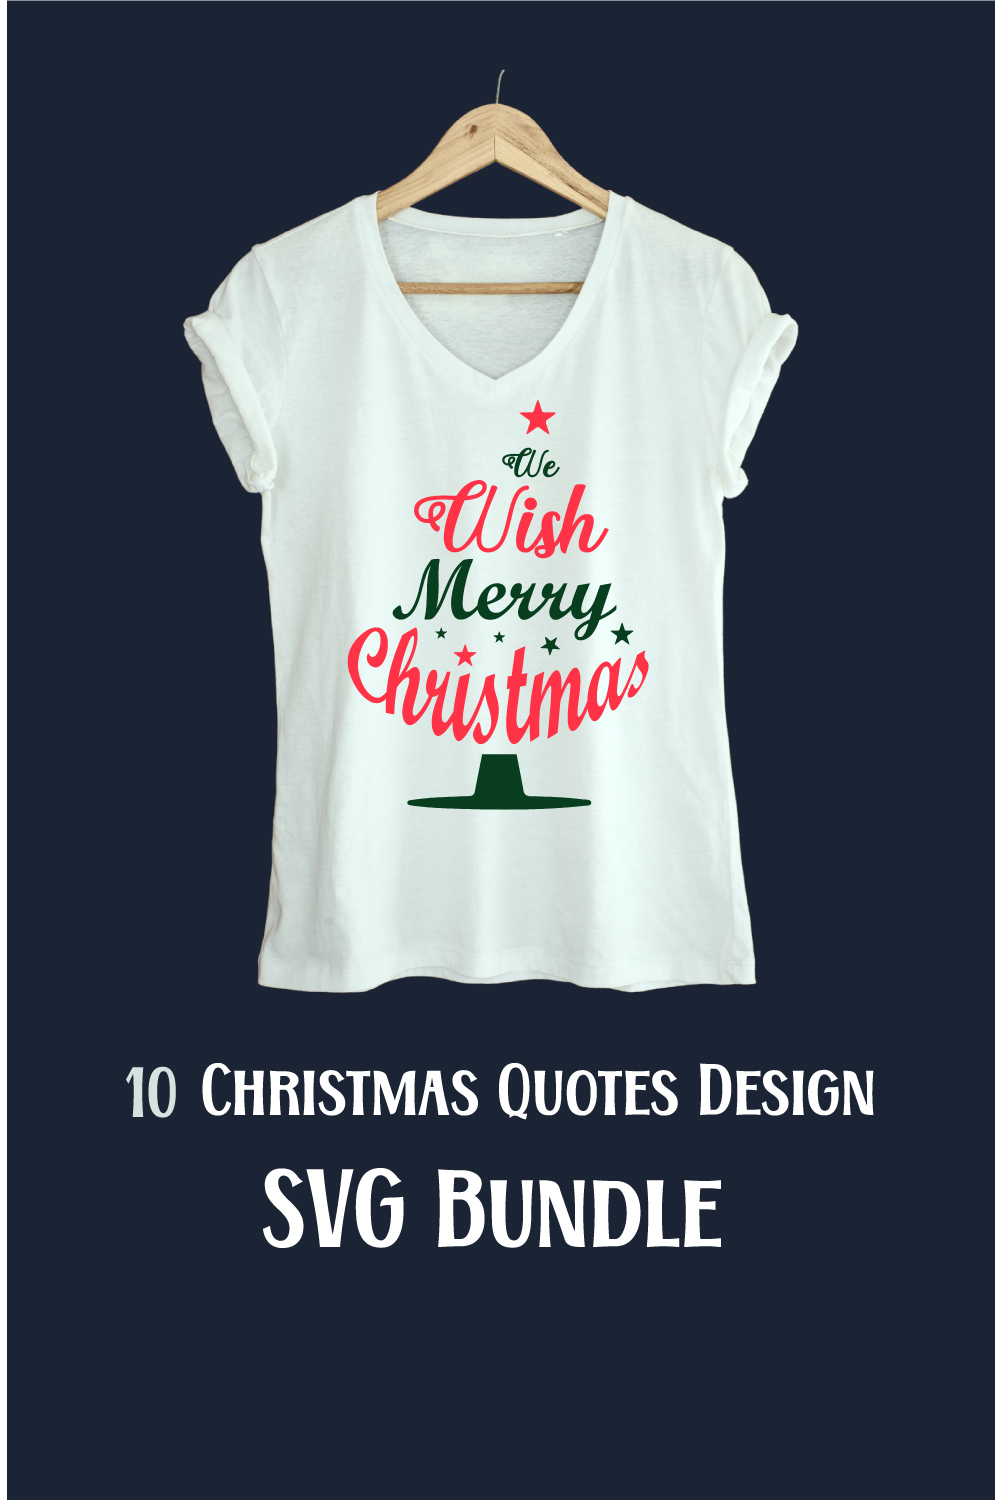 Christmas Quotes Design SVG Bundle pinterest image.